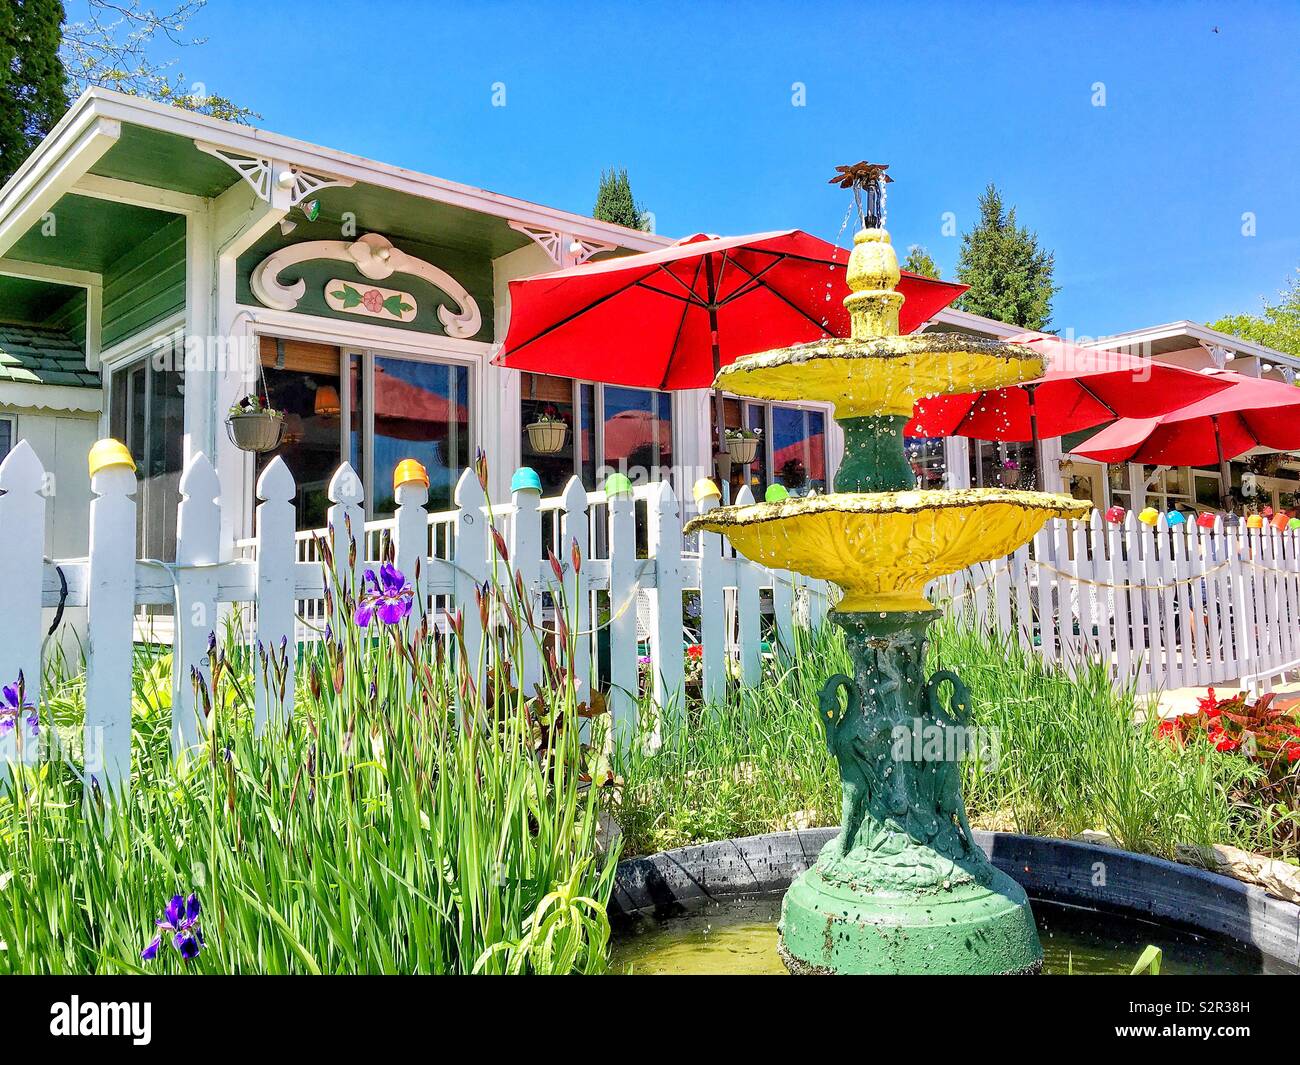 Fontaine d'eau jaune avec les oiseaux en bronze par jardin fleuri de lilas mauve à côté de clôture blanche surmontée d'un arc-en-ciel de tasses soupe à l'extérieur du restaurant Cuisine d'été dans le comté de porte, Ephriam Banque D'Images